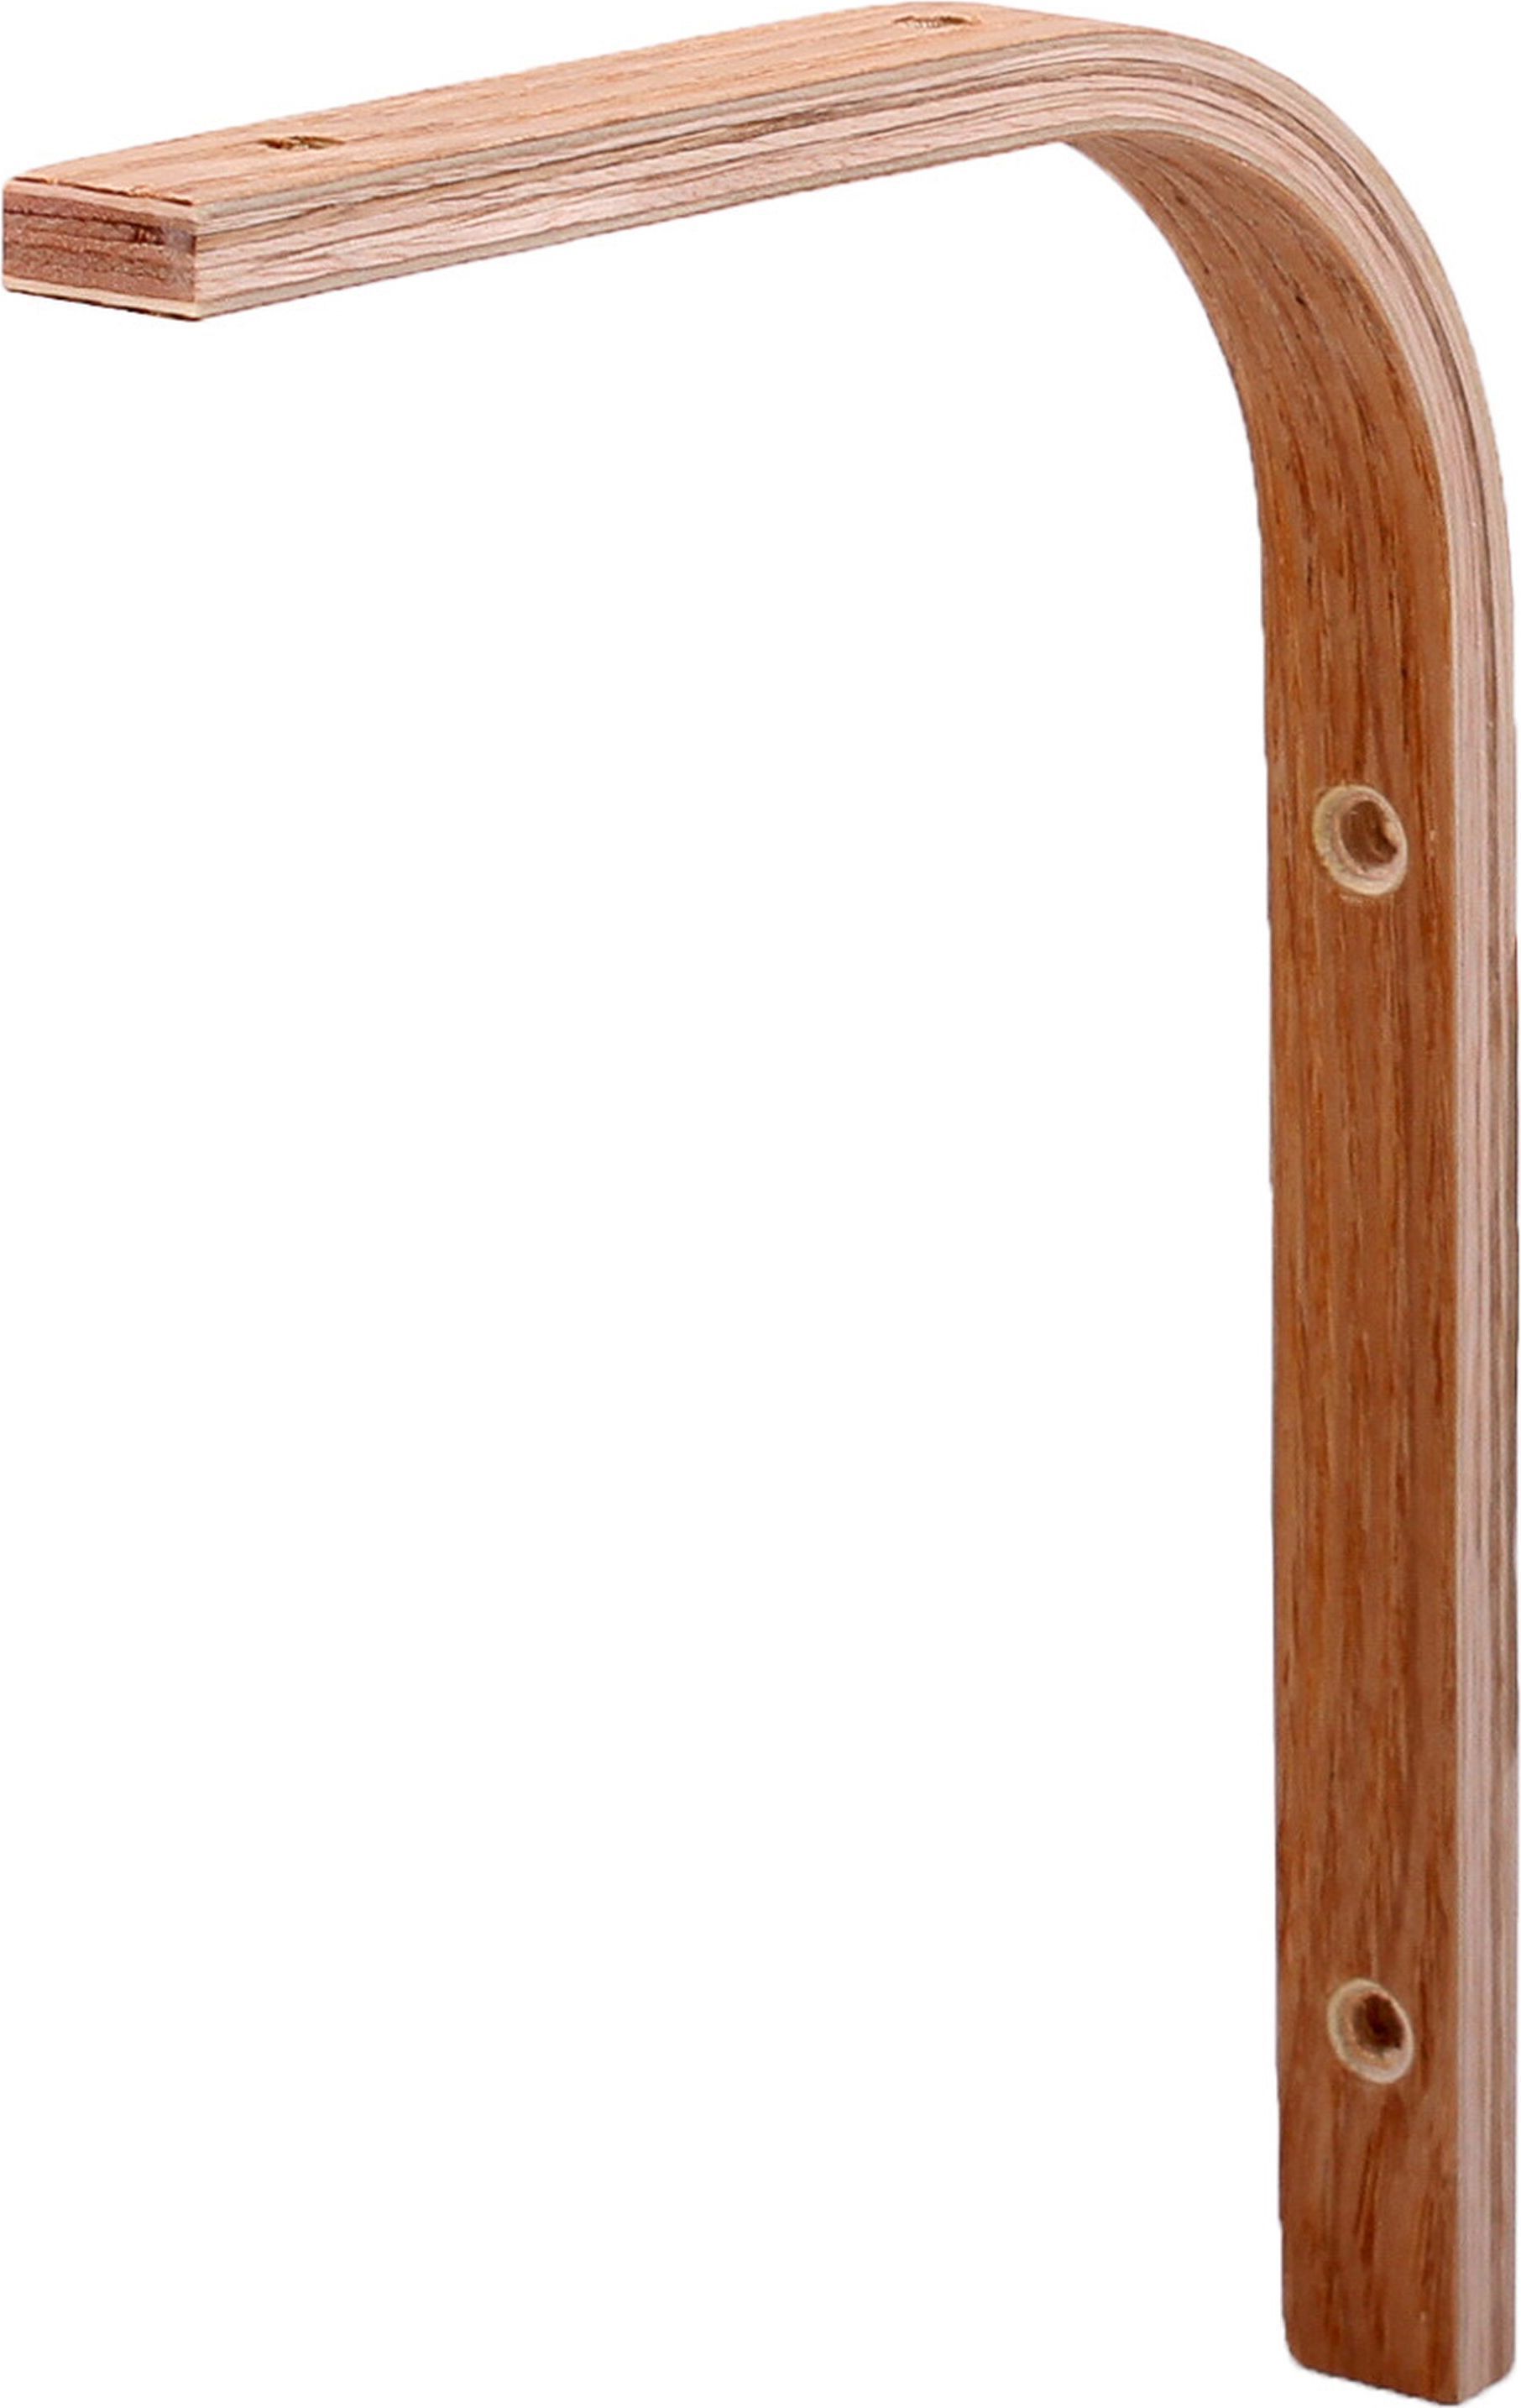 декоративный деревянный кронштейн для полки